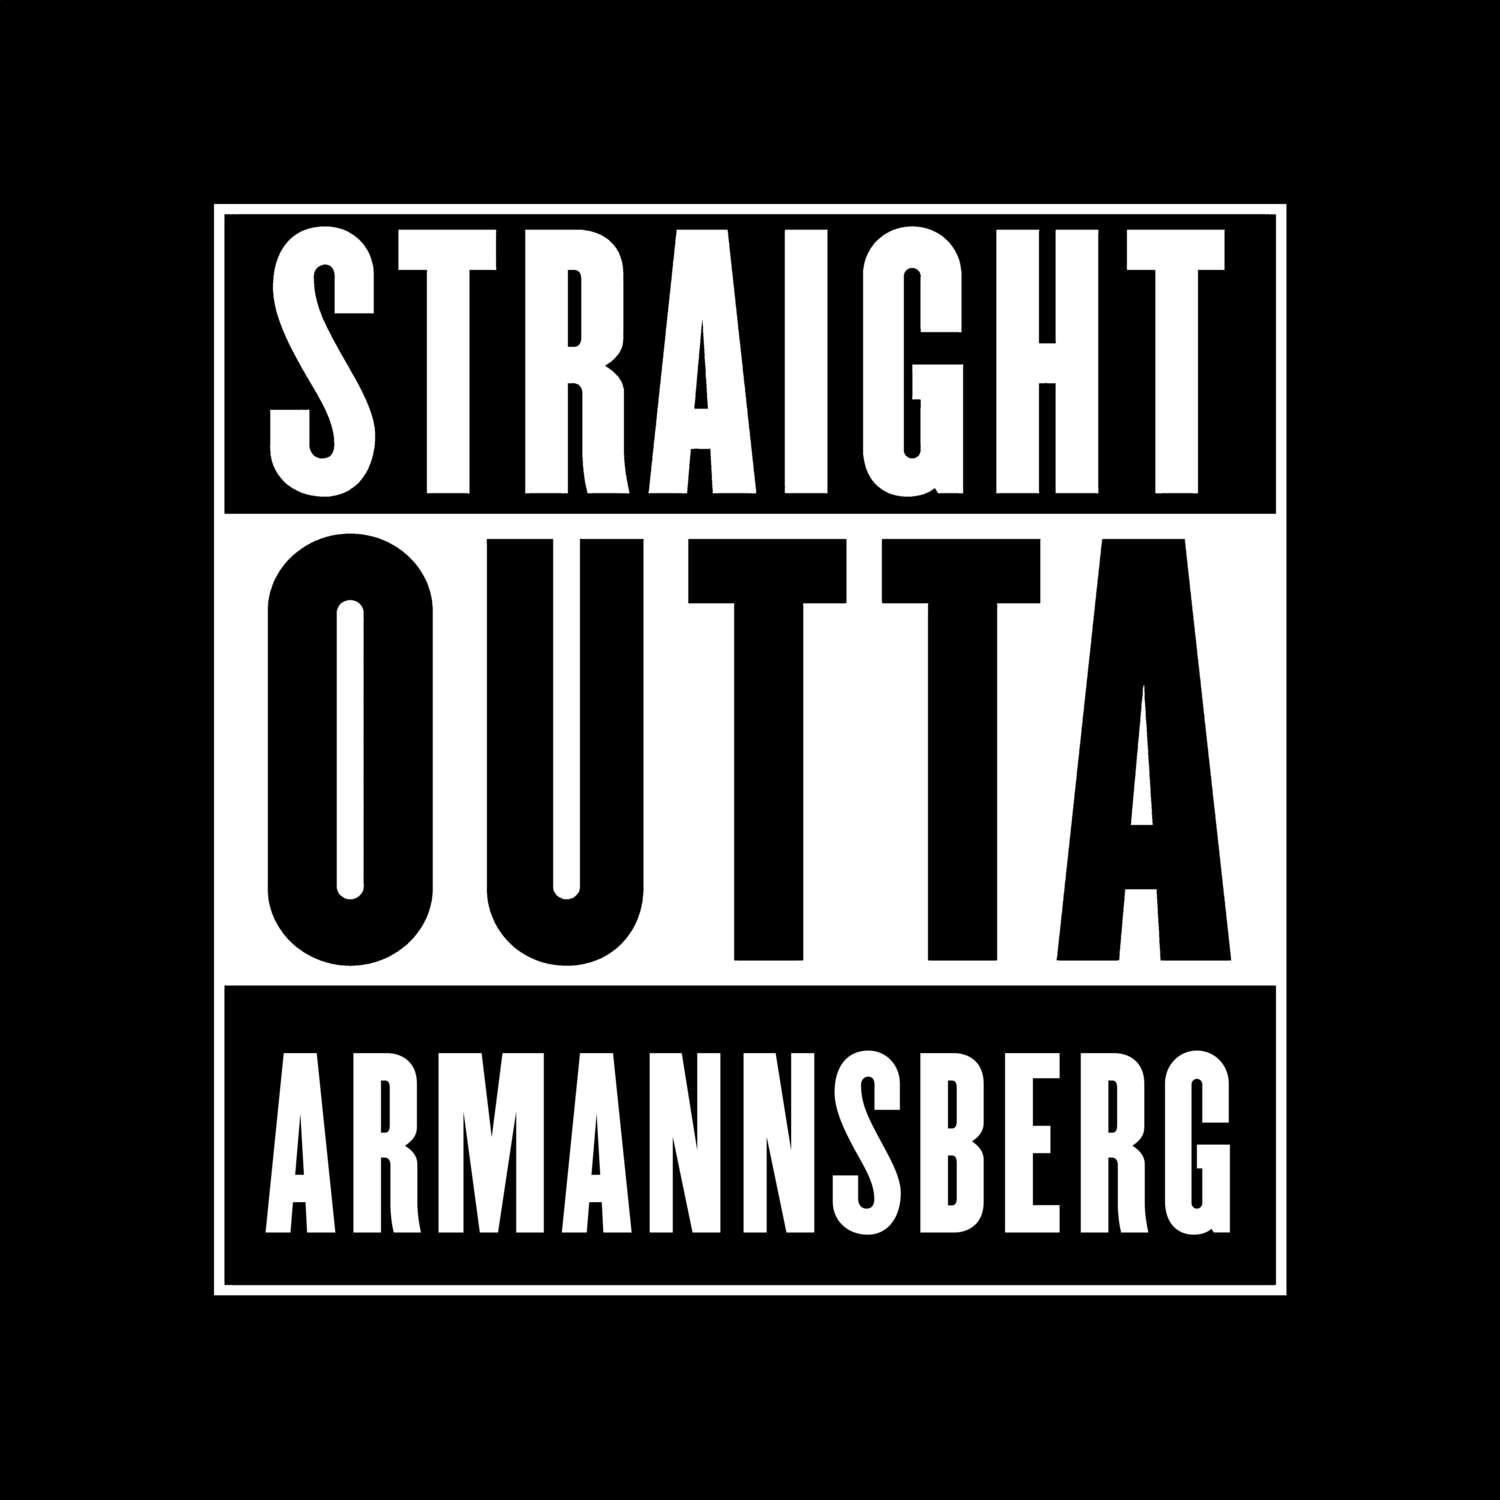 Armannsberg T-Shirt »Straight Outta«